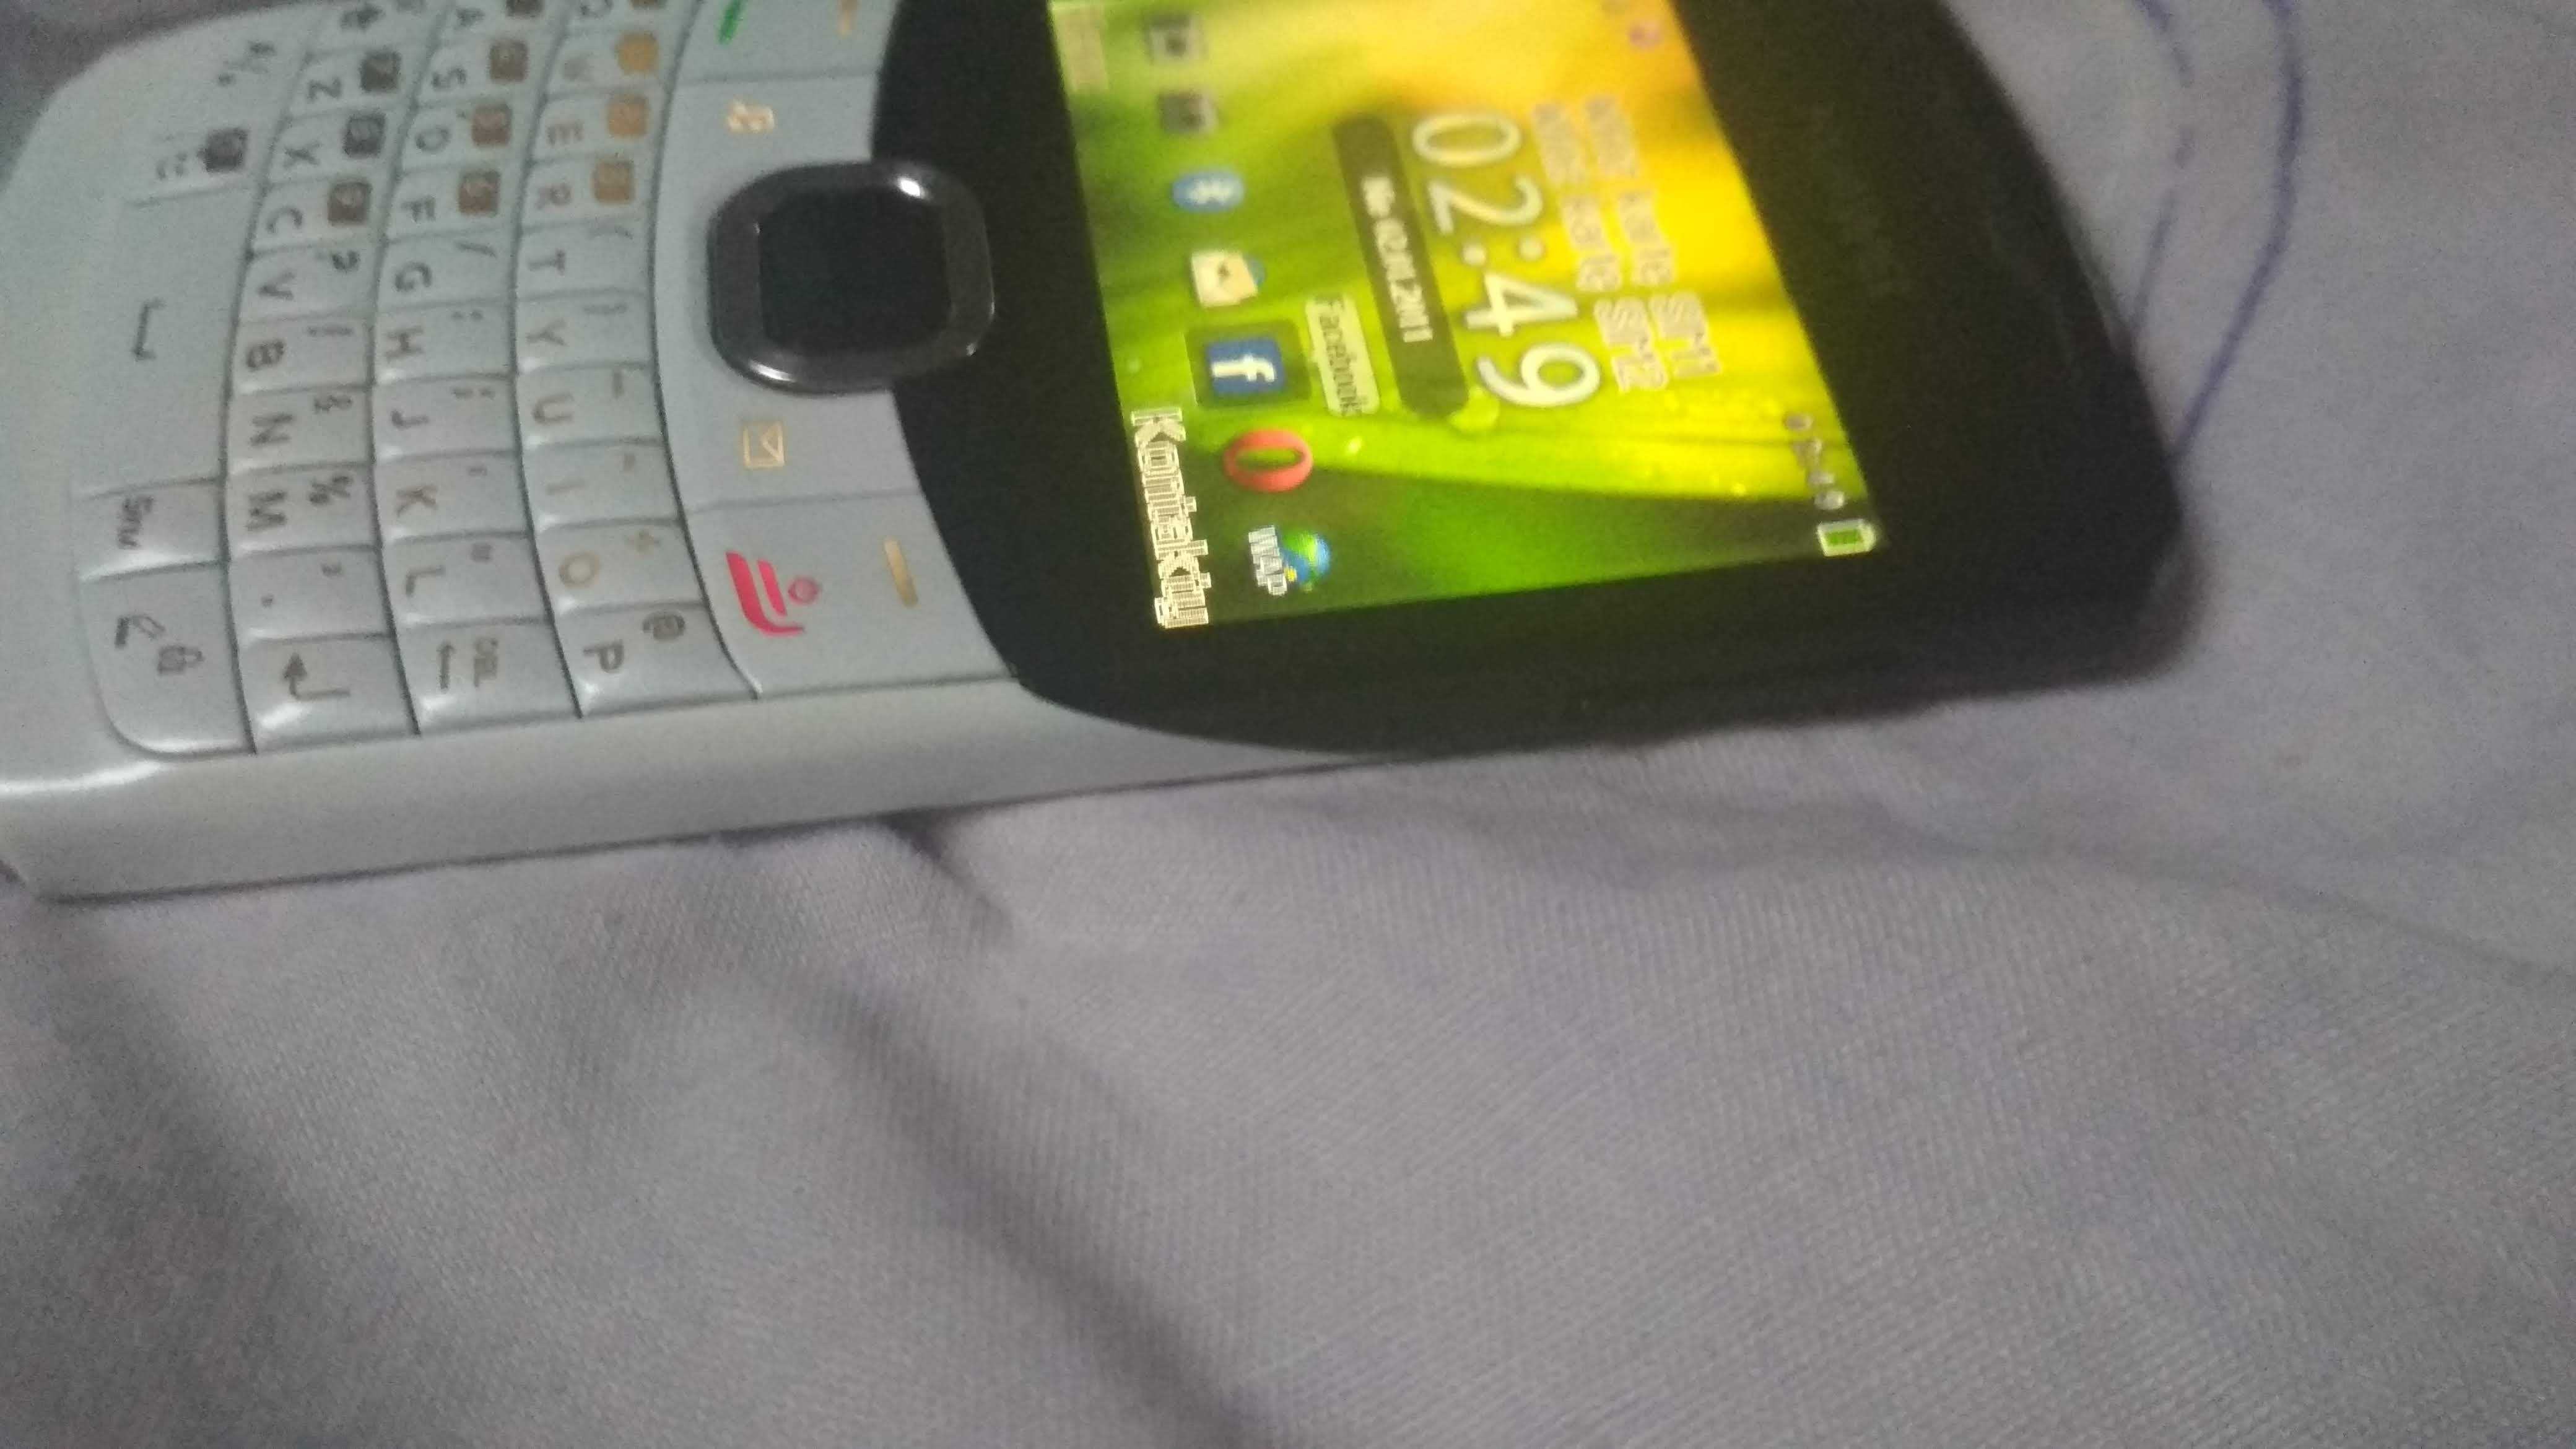 Telefon Huawei G6150 DualSim